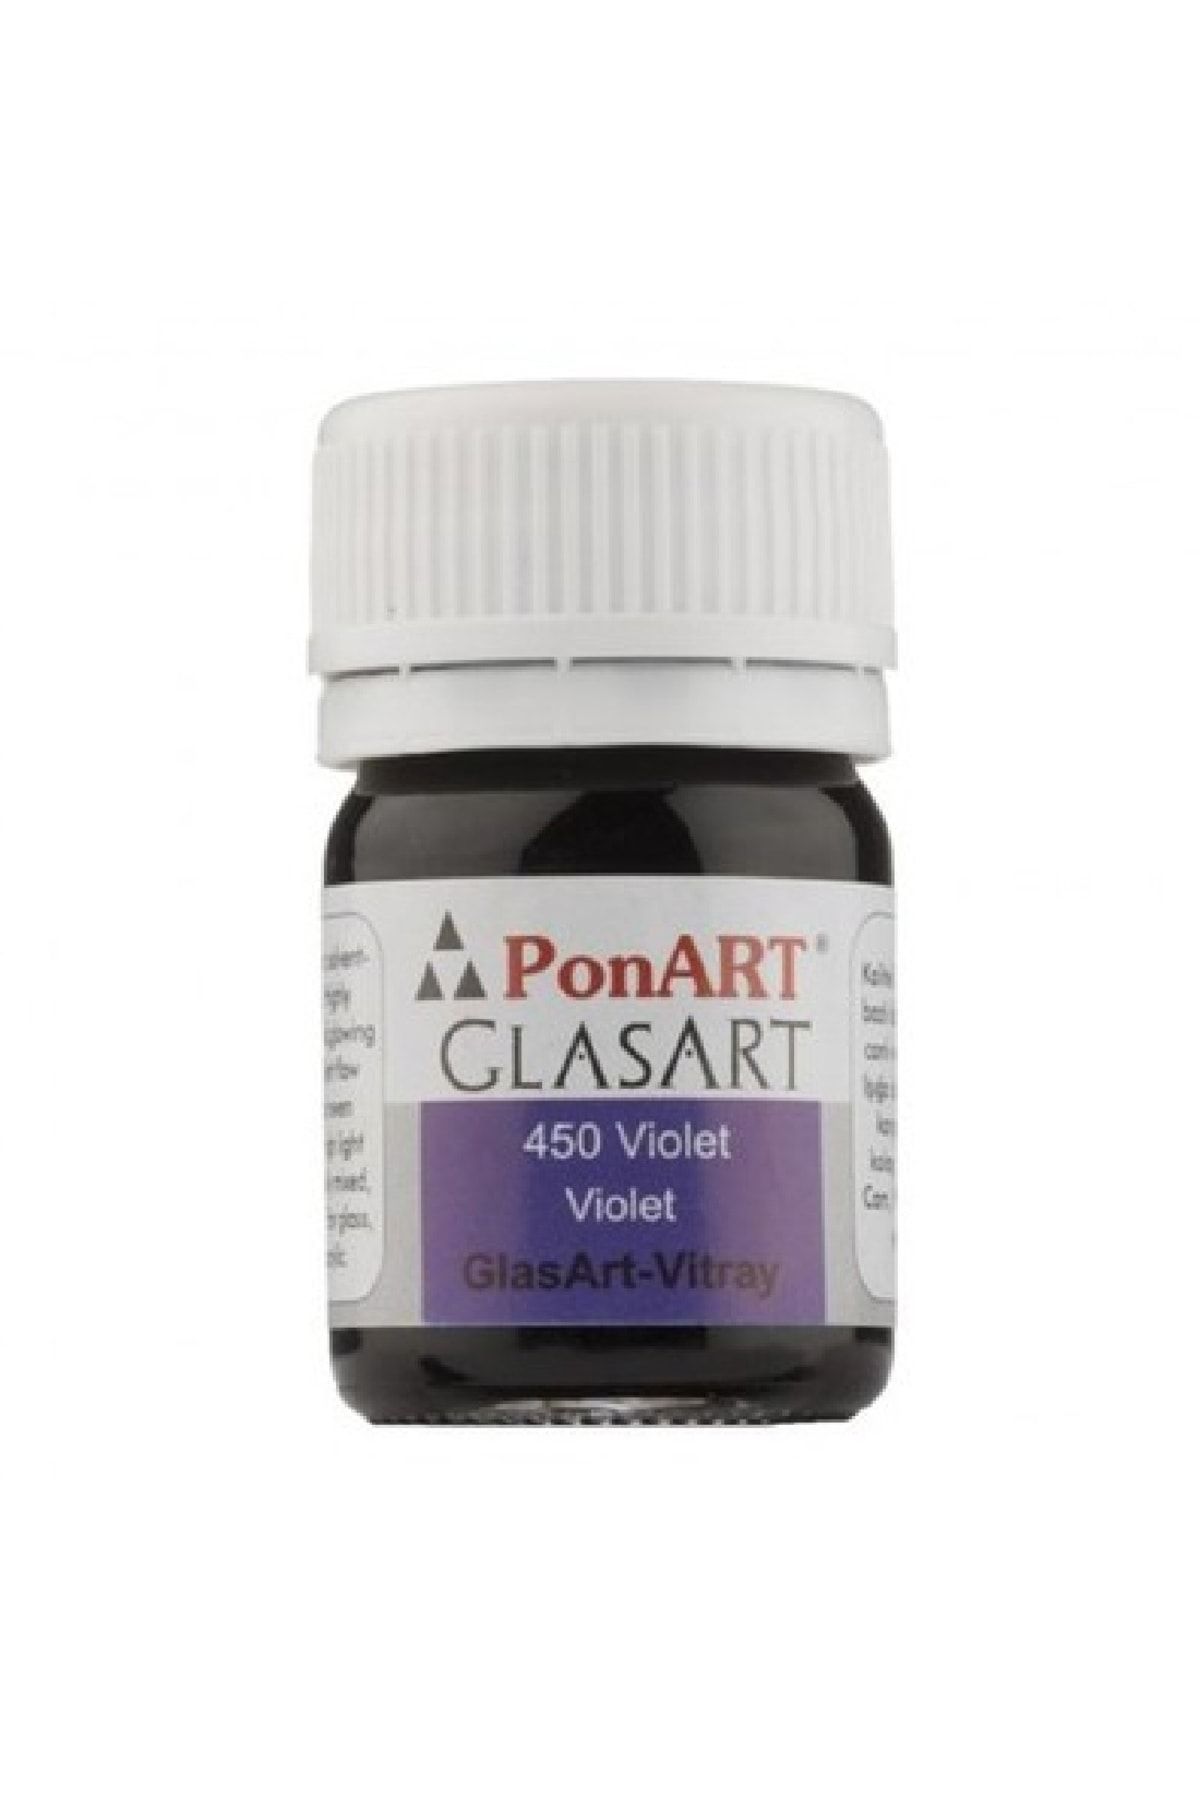 Ponart Glasart 20 Ml. Violet 450 Vitray Boyası